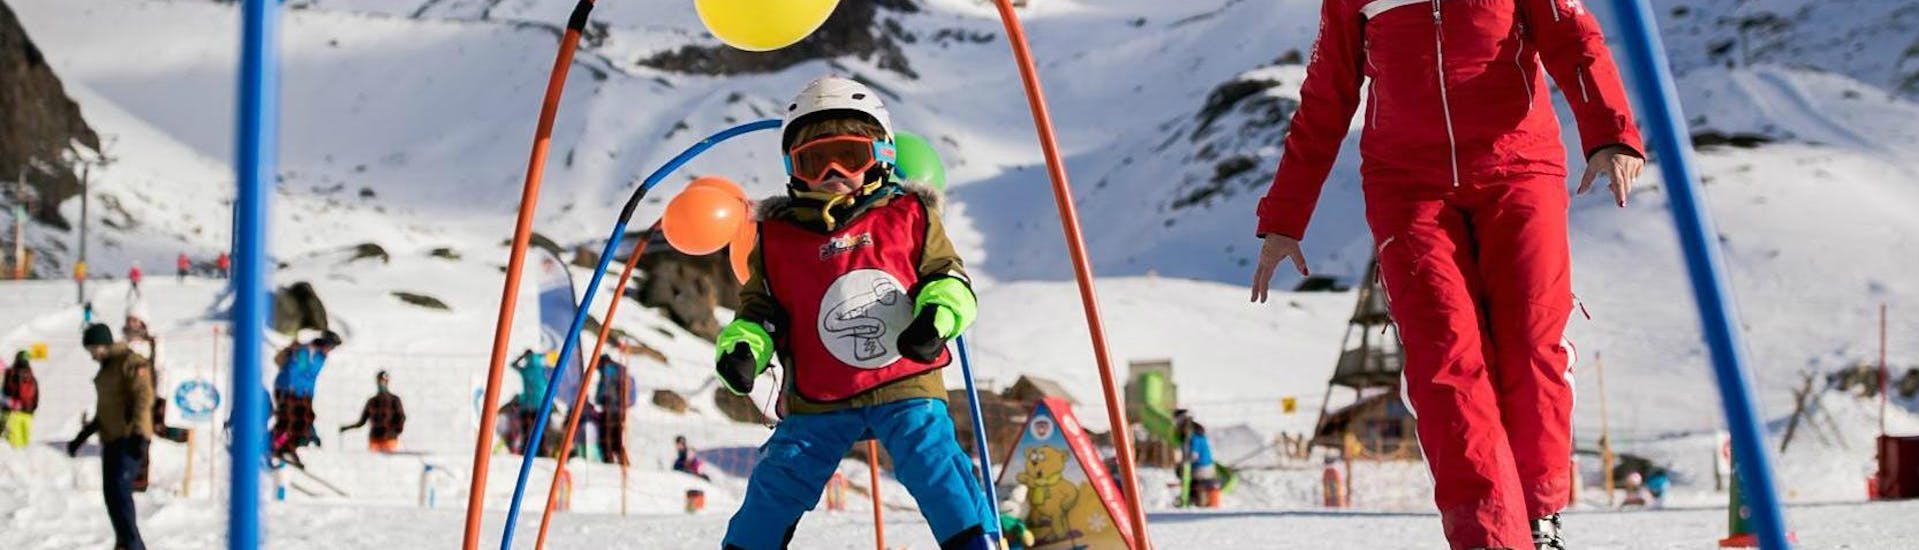 Clases de esquí para niños a partir de 3 años para principiantes con Swiss Ski School Saas-Grund.